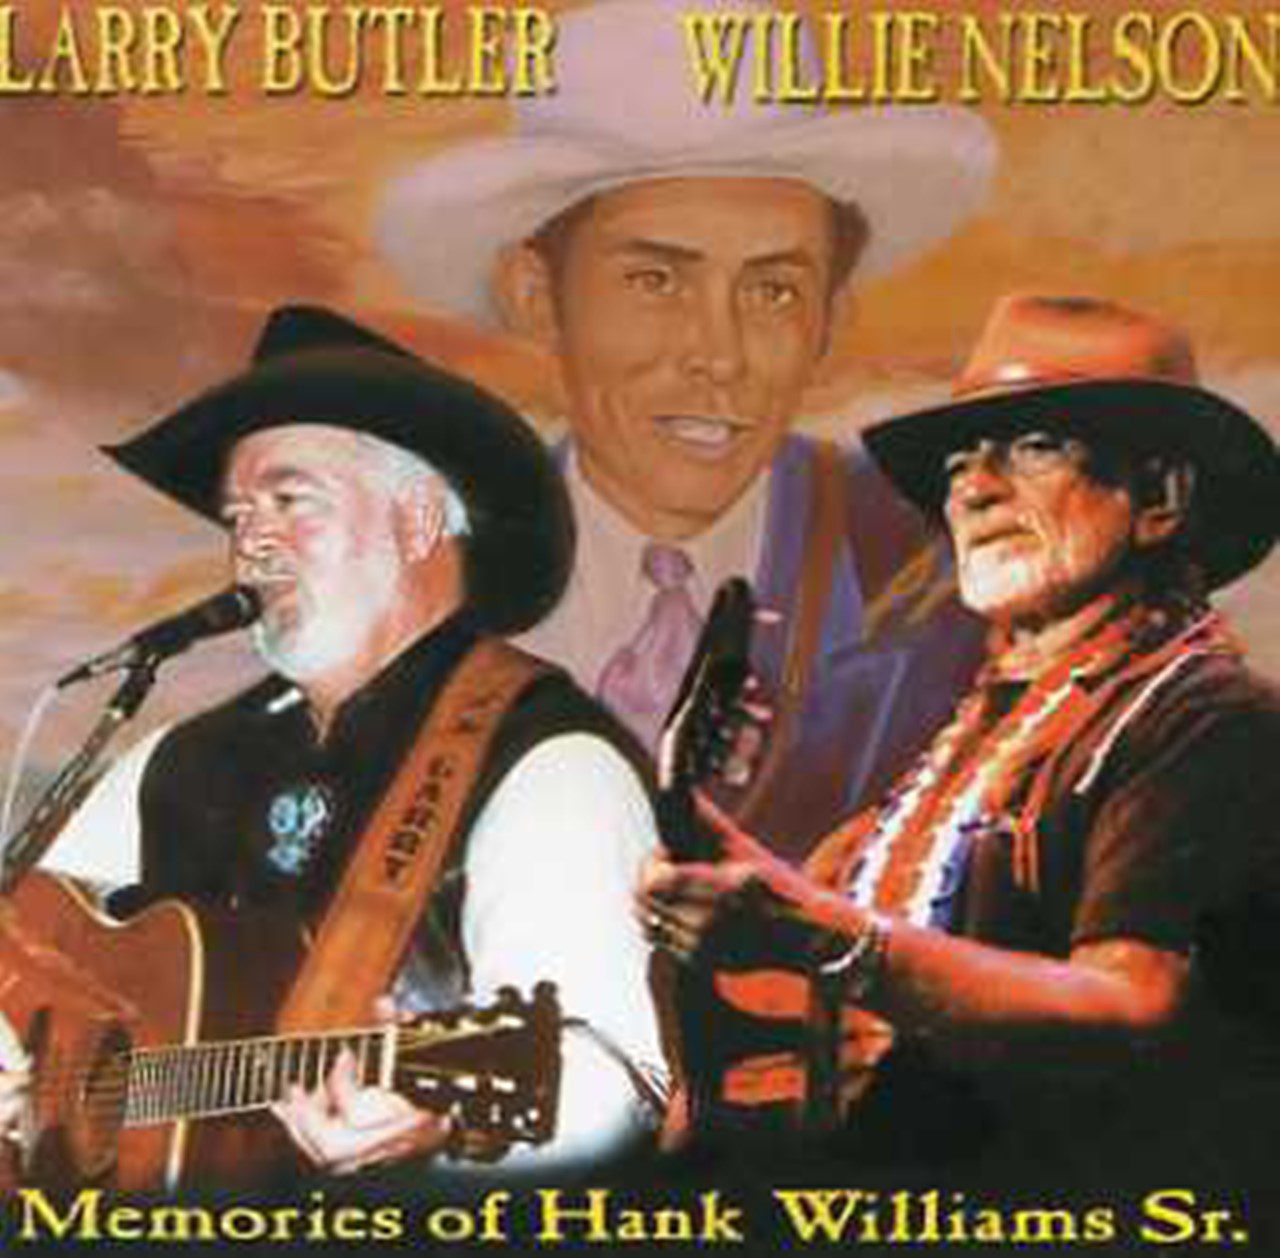 Larry Butler & Willie Nelson – Memories Of Hank Williams Sr. cover album